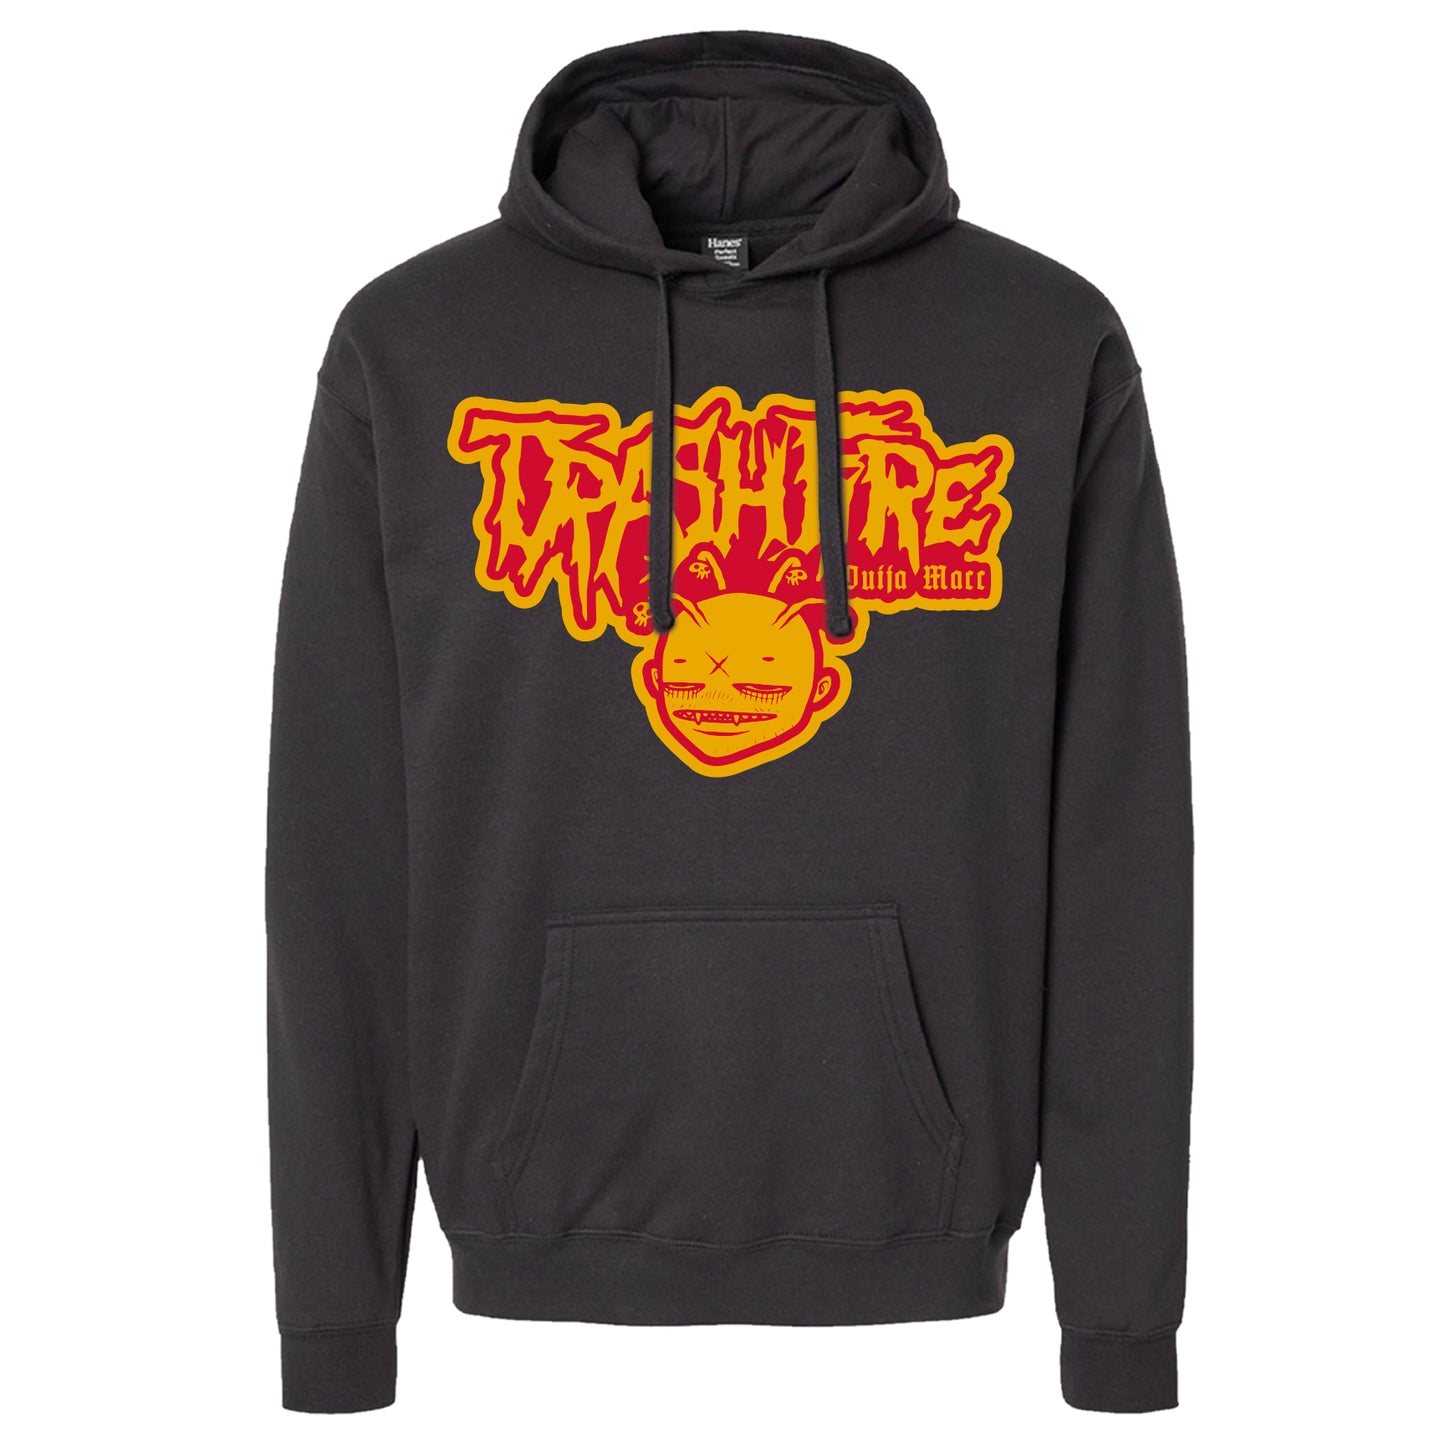 Trashfire - logo - HOODIE in BLACK